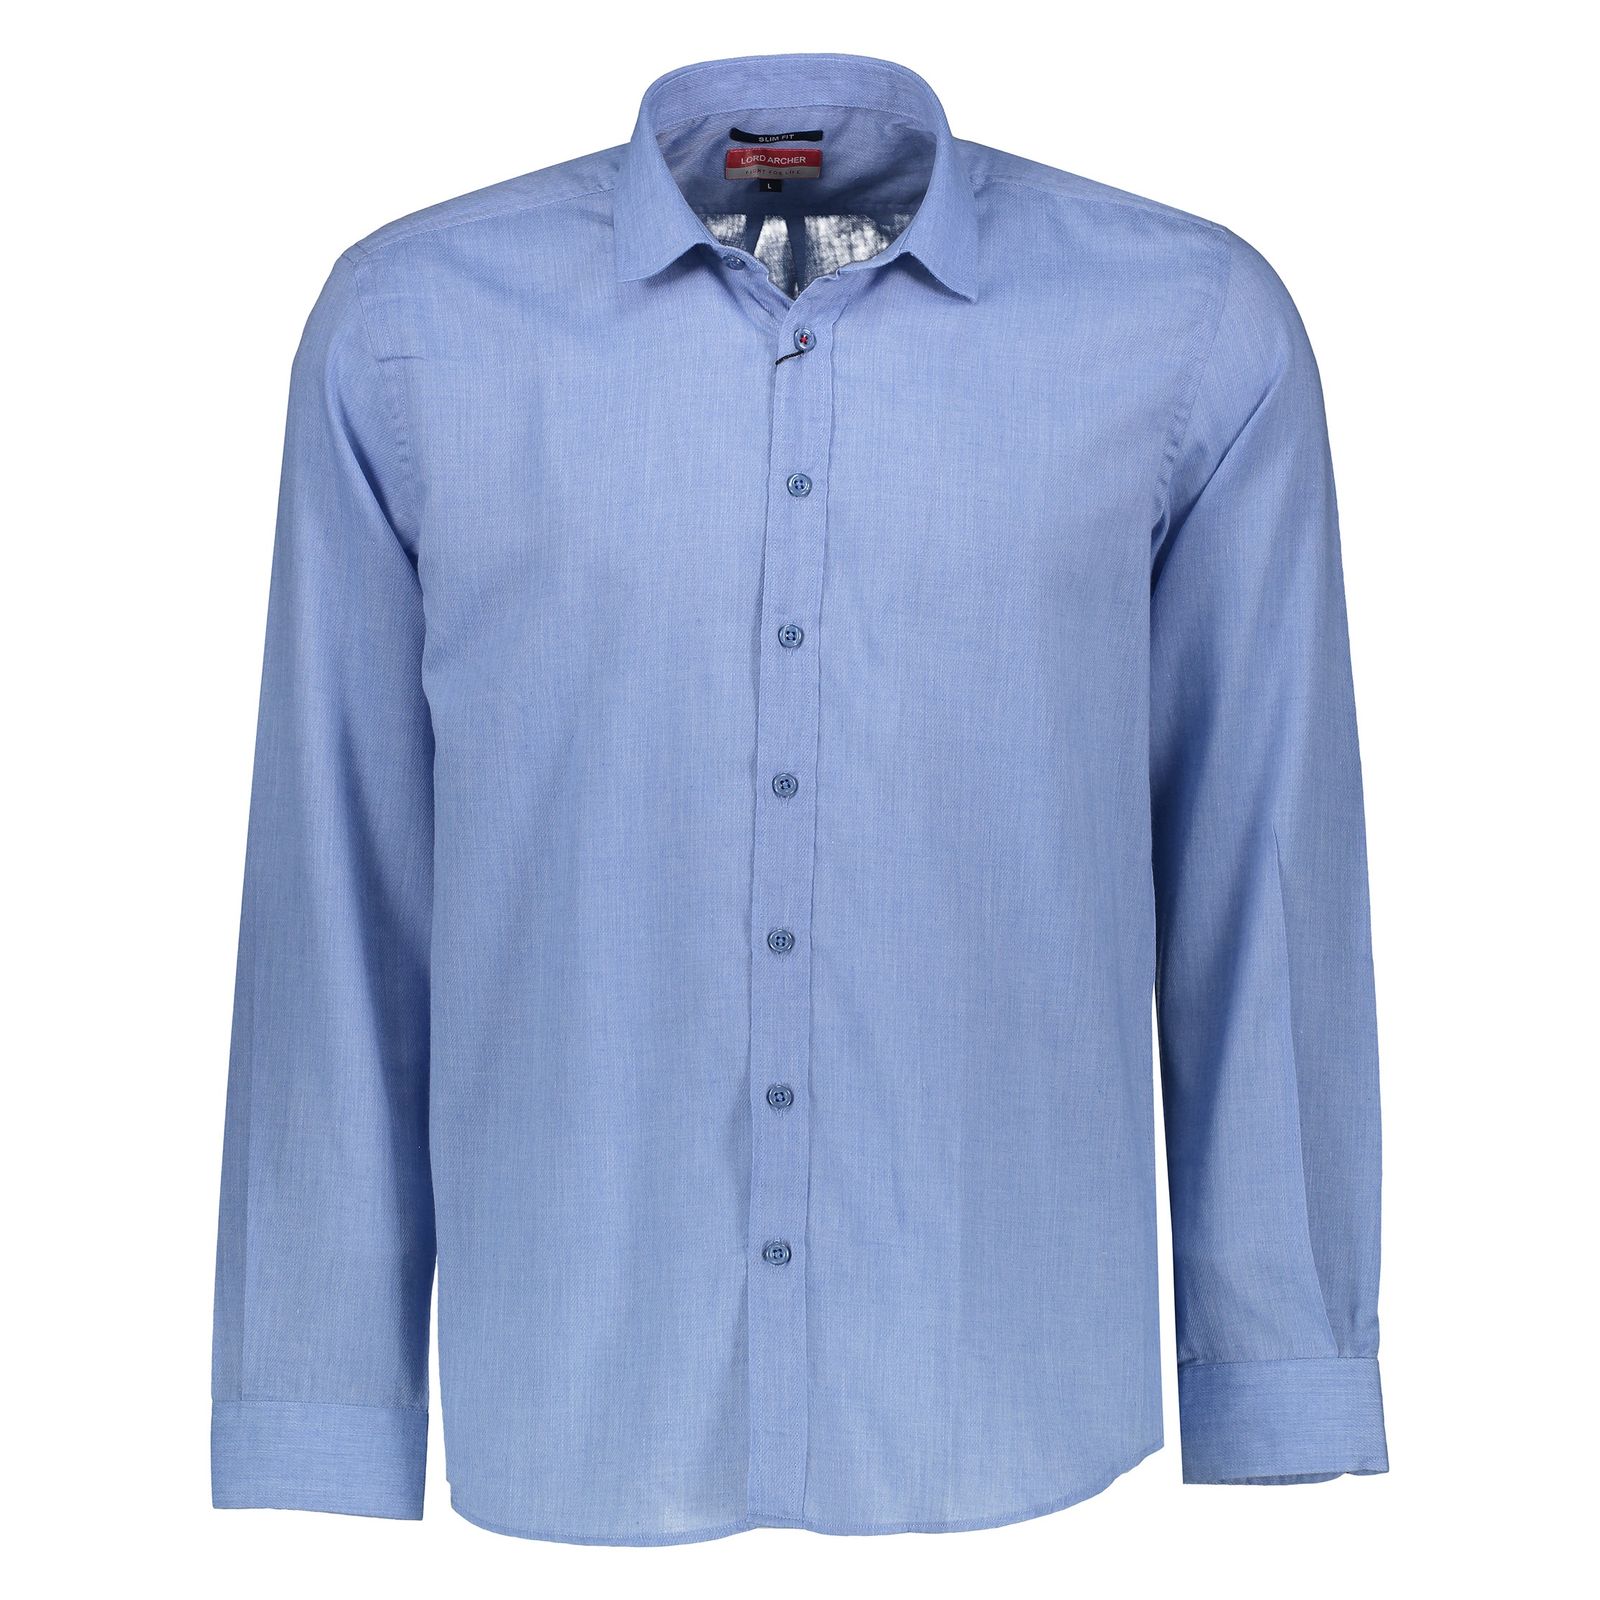 پیراهن مردانه لرد آرچر مدل 200114657 - آبی - 1